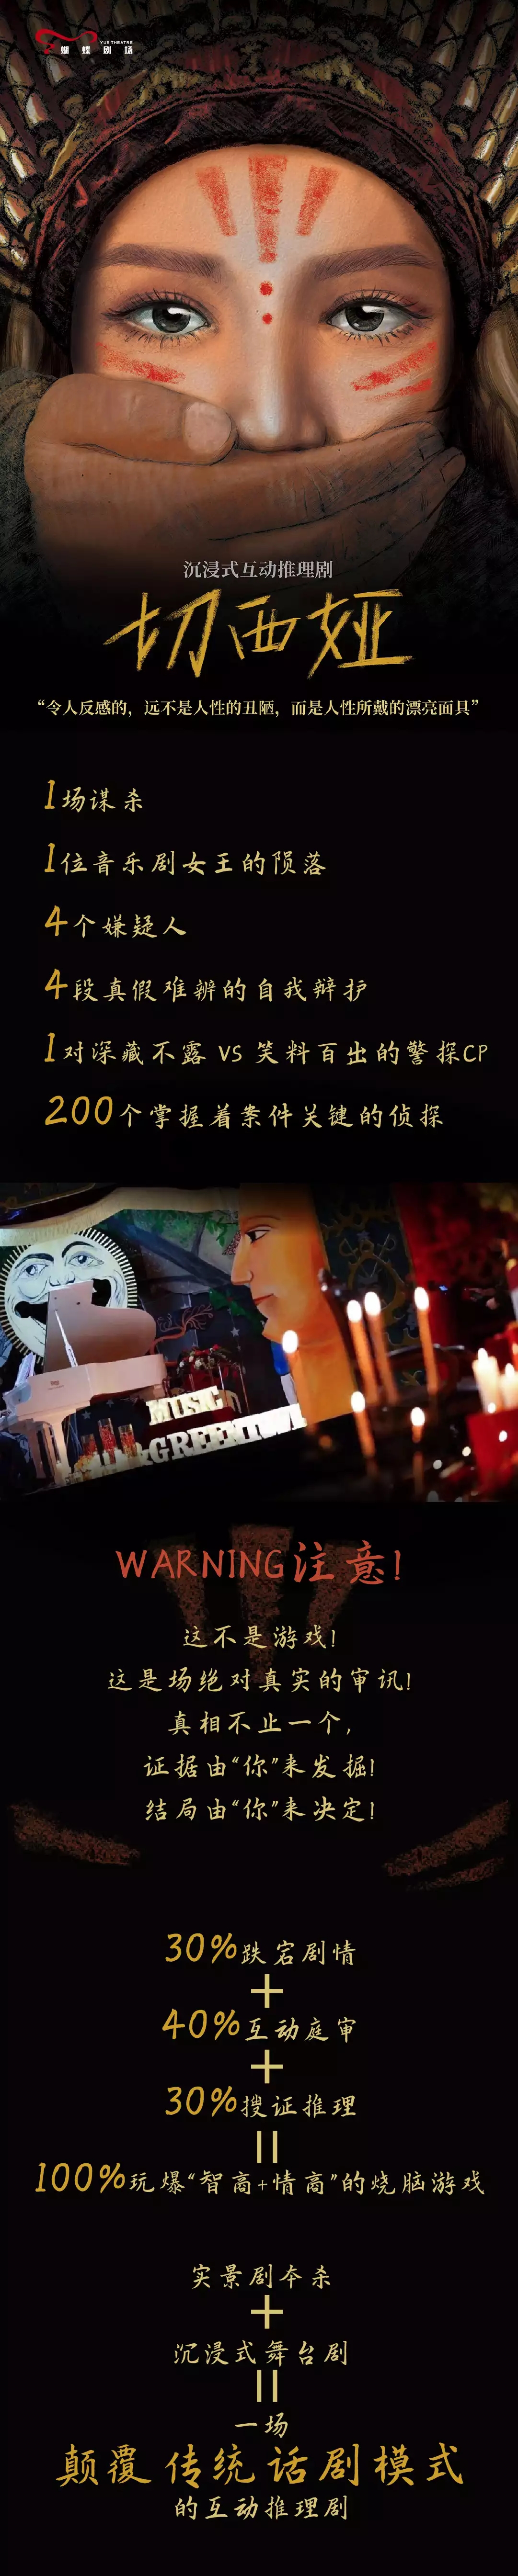 2021西戏·沉浸式互动推理剧《切西娅》-杭州站